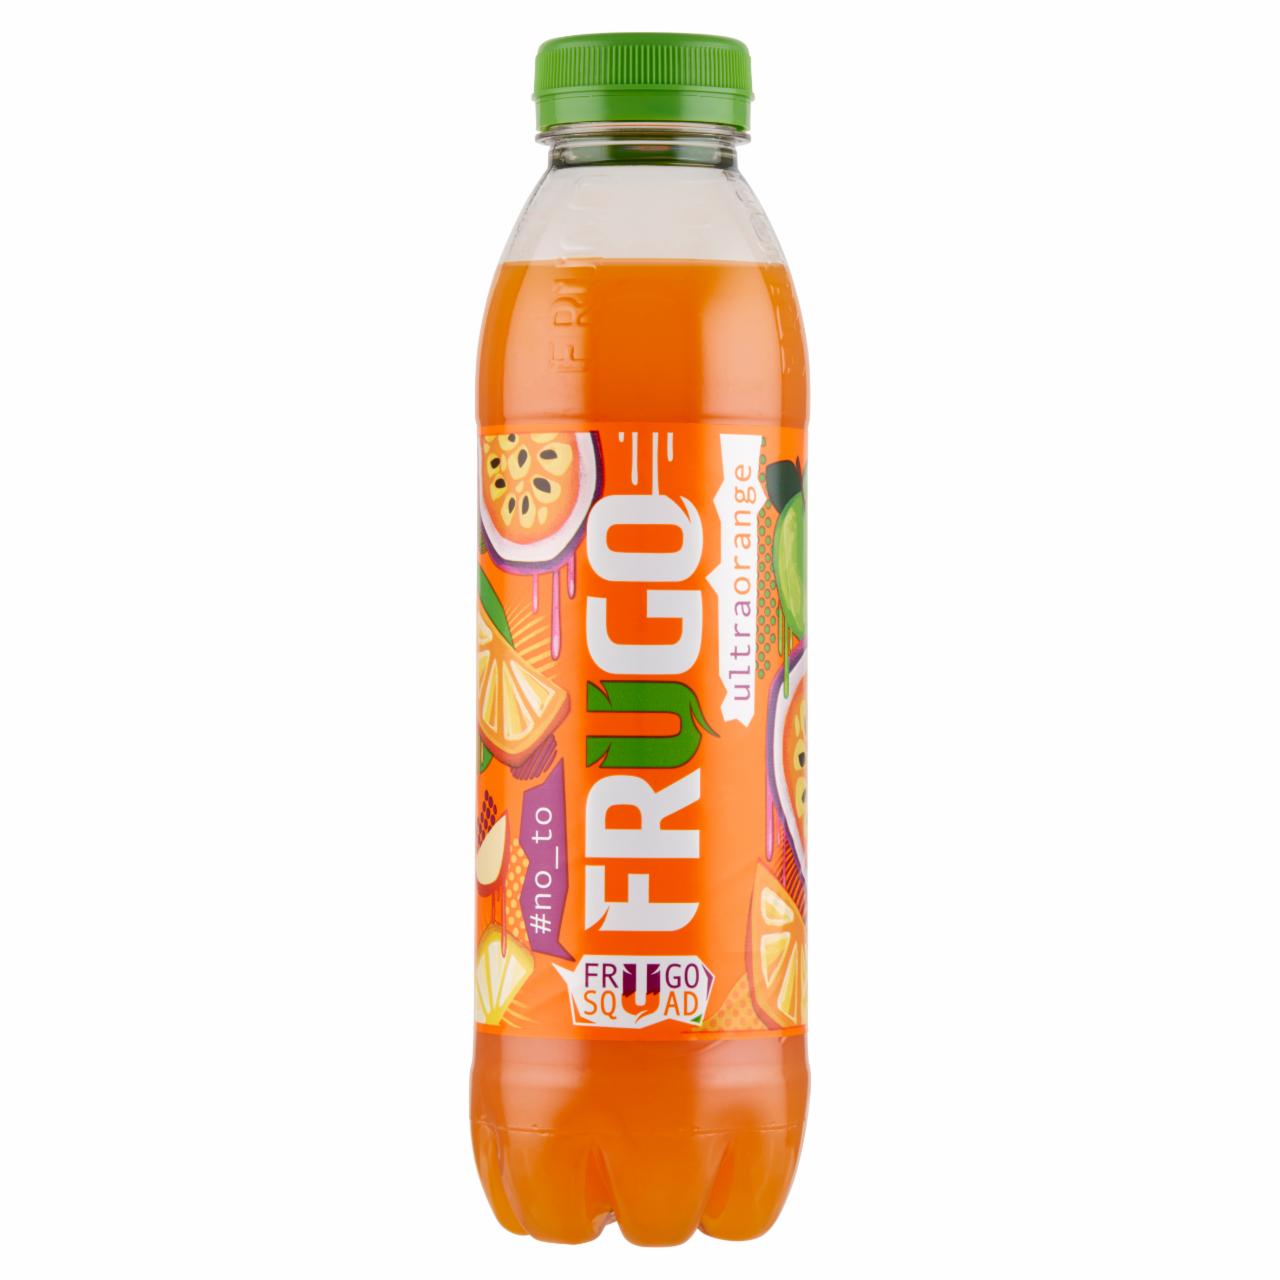 Фото - Напиток апельсиновый Orange Frugo